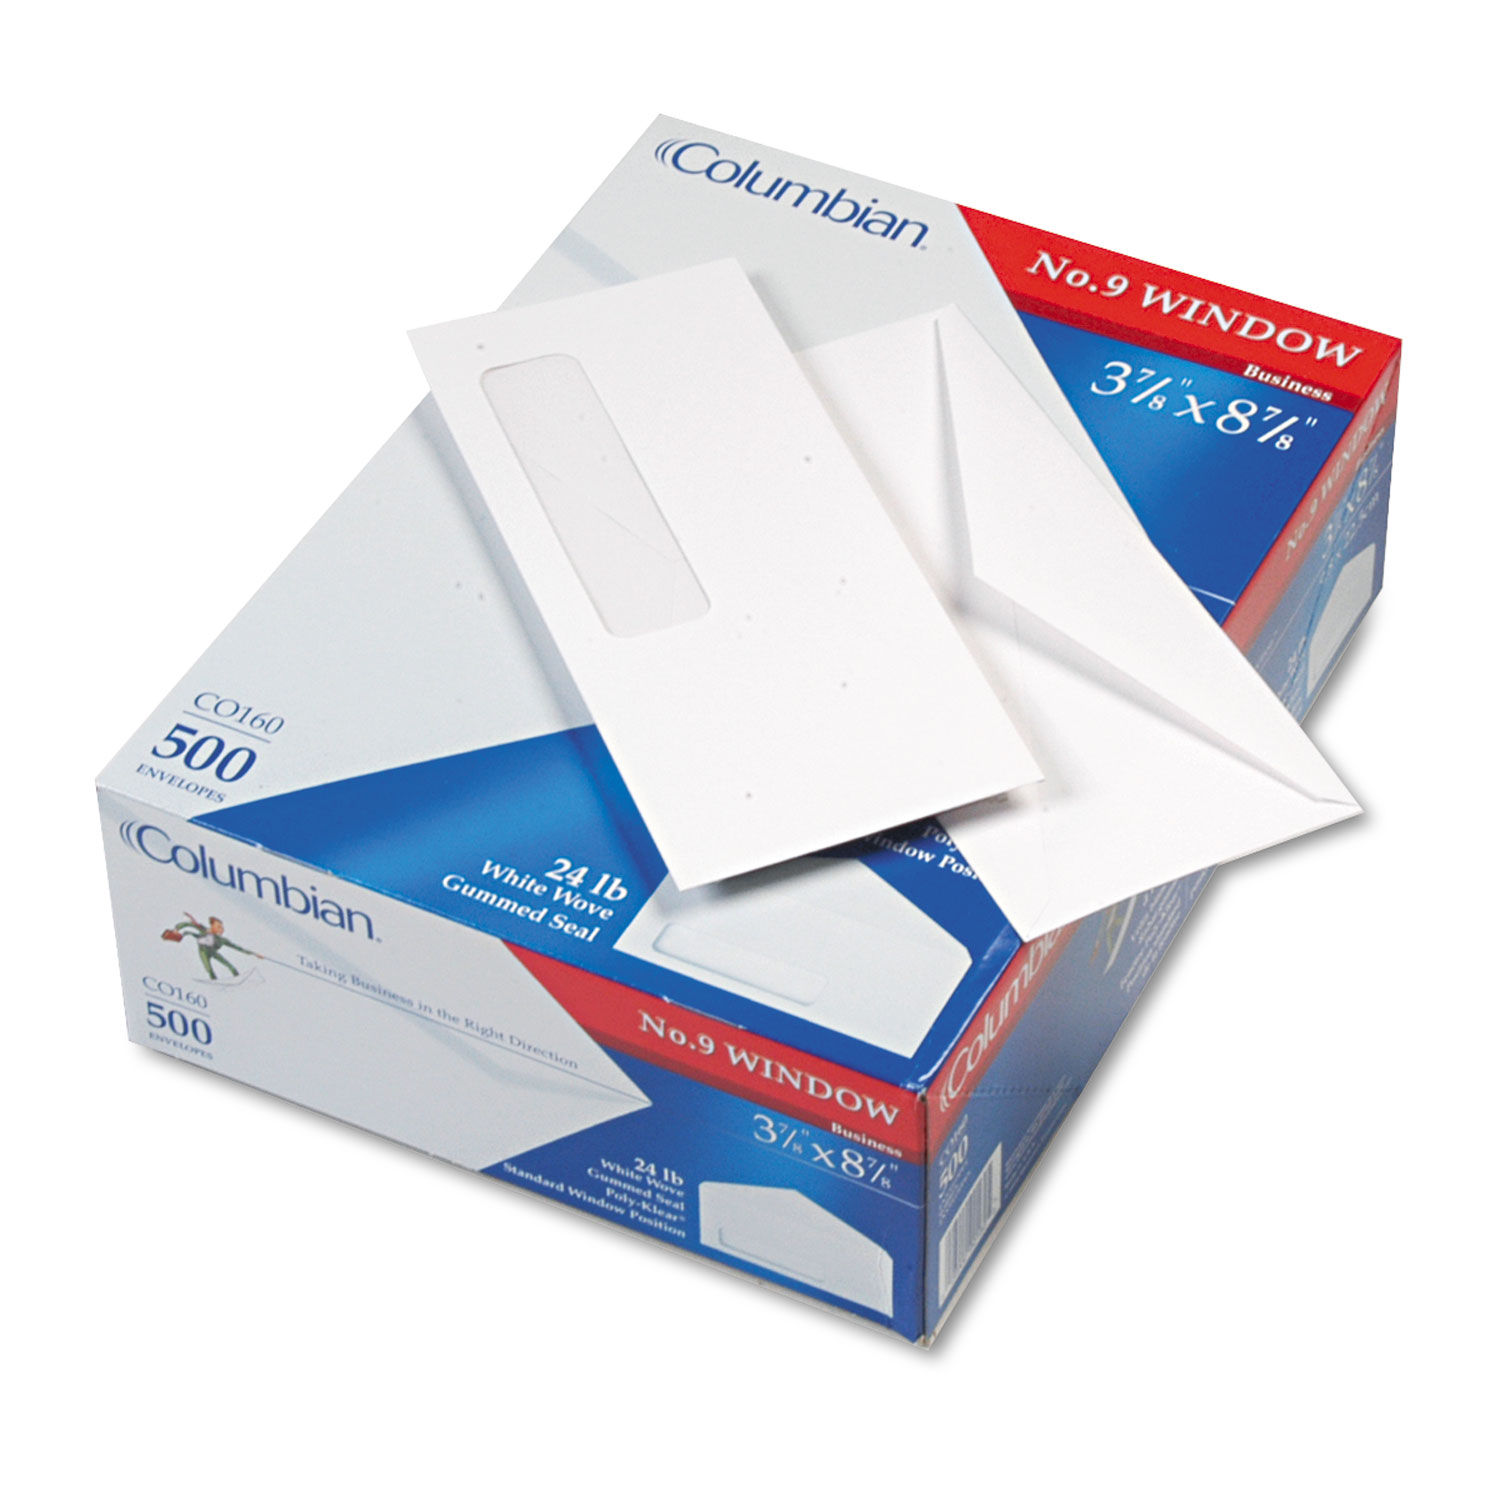 Poly-Klear Single Window Envelope, #9, 3 7/8 x 8 7/8, 500/Box